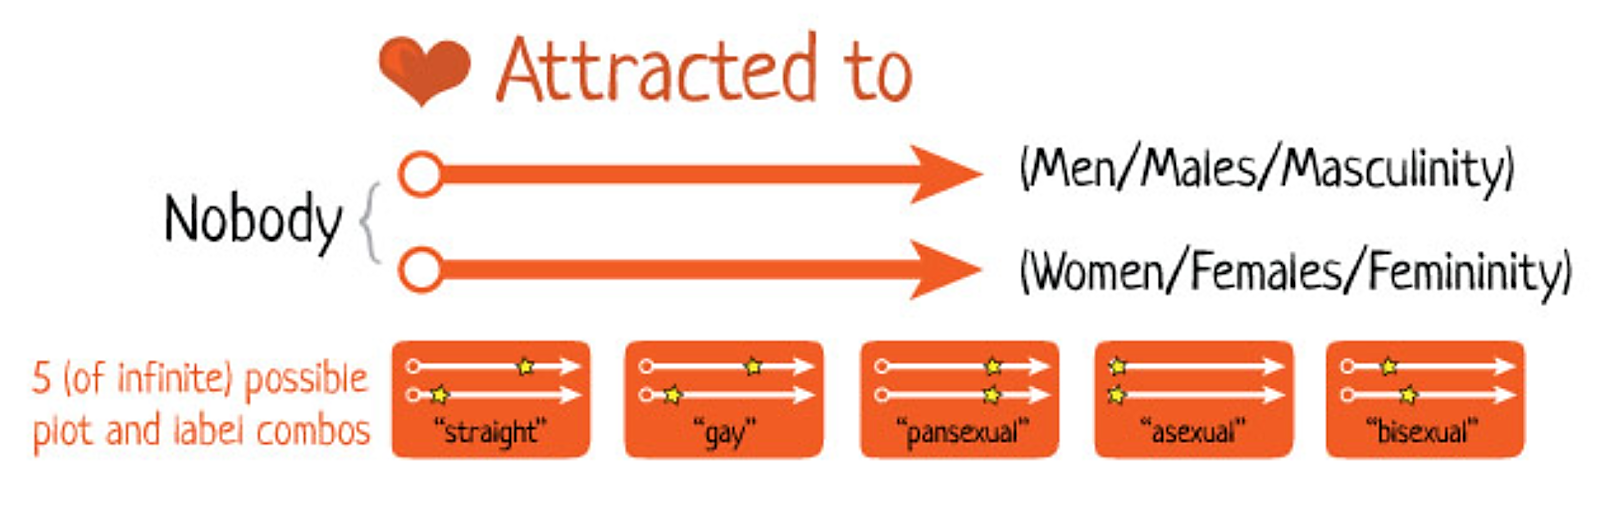 Una sección de La ilustración de La persona Genderbread v2.0, que muestra el espectro de atracción. Hay dos flechas paralelas que muestran los espectros. La flecha superior va de “Nadie” a “Hombres/Hombres/Masculinidad” y la flecha inferior va de “Nadie” a “Mujeres/Feminidad”. En la parte inferior de la ilustración hay 5 combinaciones posibles de trama y etiqueta, incluyendo “heterosexual”, “gay”, “pansexual”, “asexual” y “bisexual”.